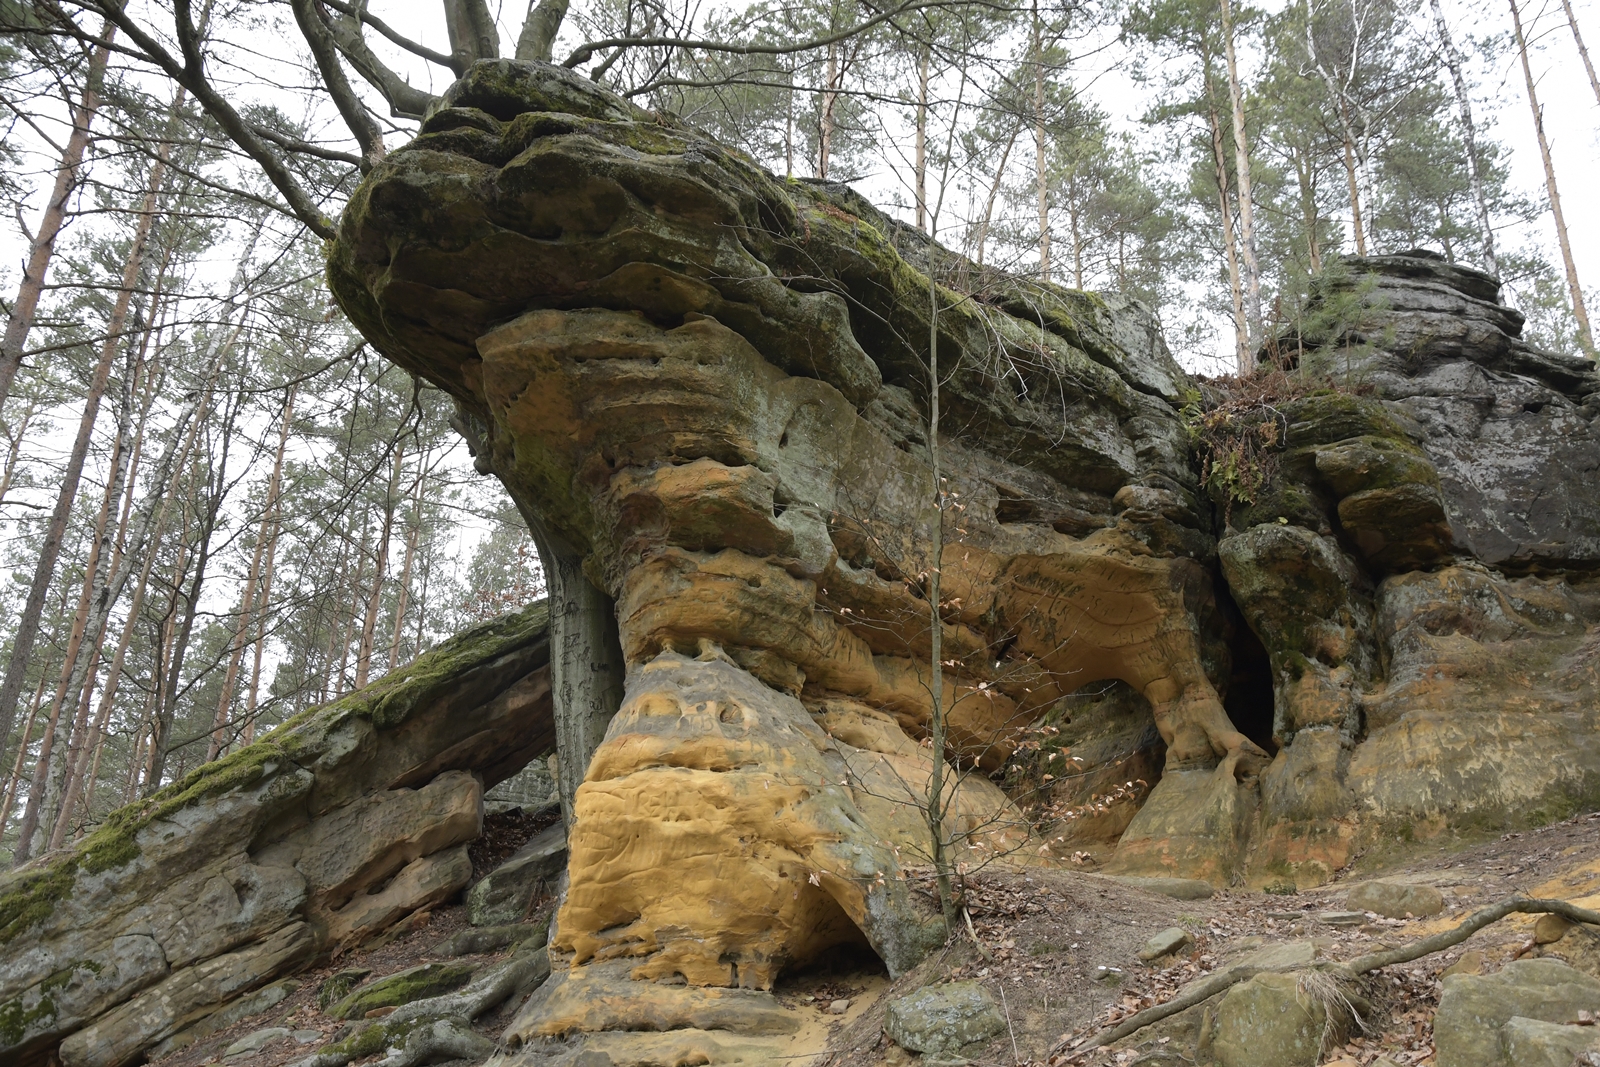 Pomarańczowo-zielona skała widoczna od dołu, o płaskiej górze - w rezerwacie przyrody Skałki Piekło pod Niekłaniem.